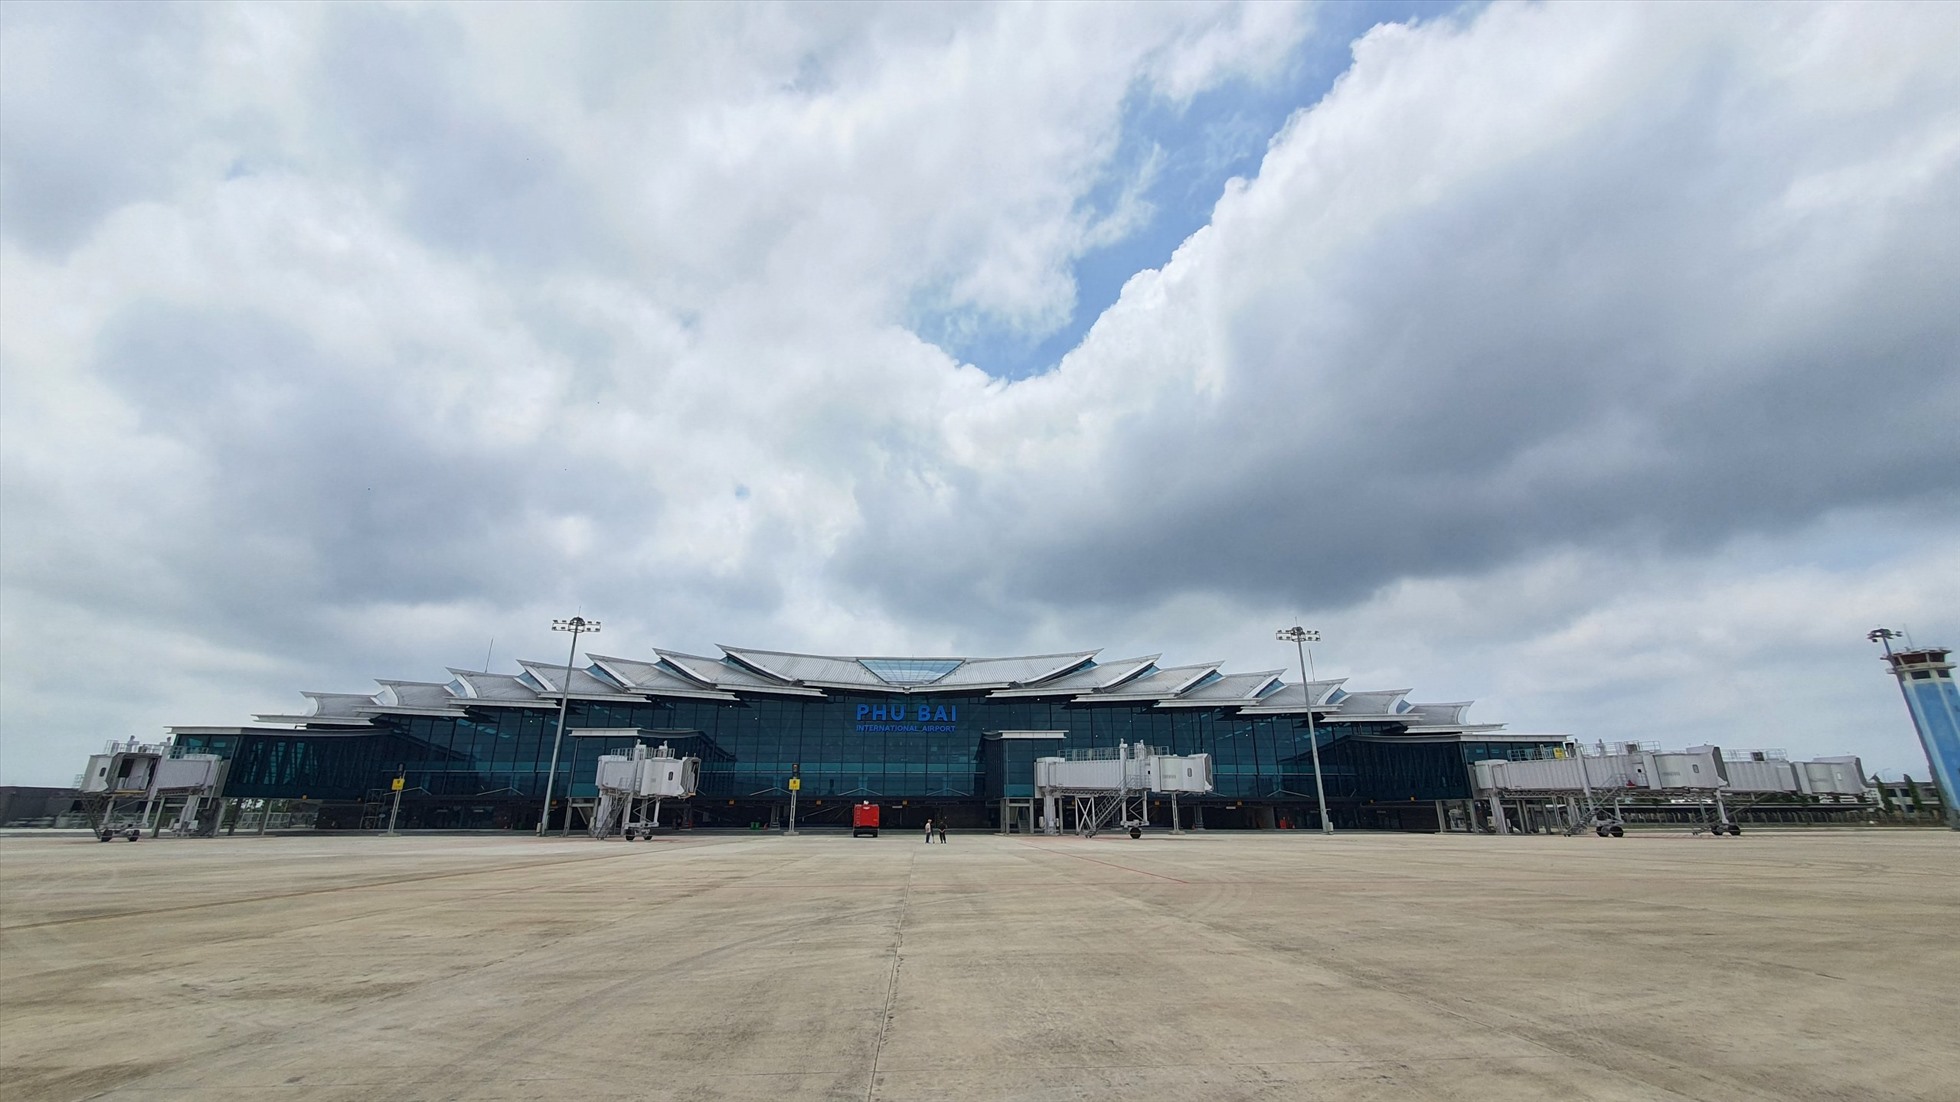 Khi đưa vào khai thác, Dự án Nhà ga T2 - Cảng hàng không quốc tế Phú Bài được kỳ vọng sẽ góp phần quan trọng trong việc kết nối, đa dạng hoá các phương tiện vận tải, khai thác được tiềm năng và lợi thế sẵn có, tạo động lực thúc đẩy sự phát triển kinh tế - xã hội, an ninh quốc phòng cho tỉnh Thừa Thiên Huế và cho cả khu vực.